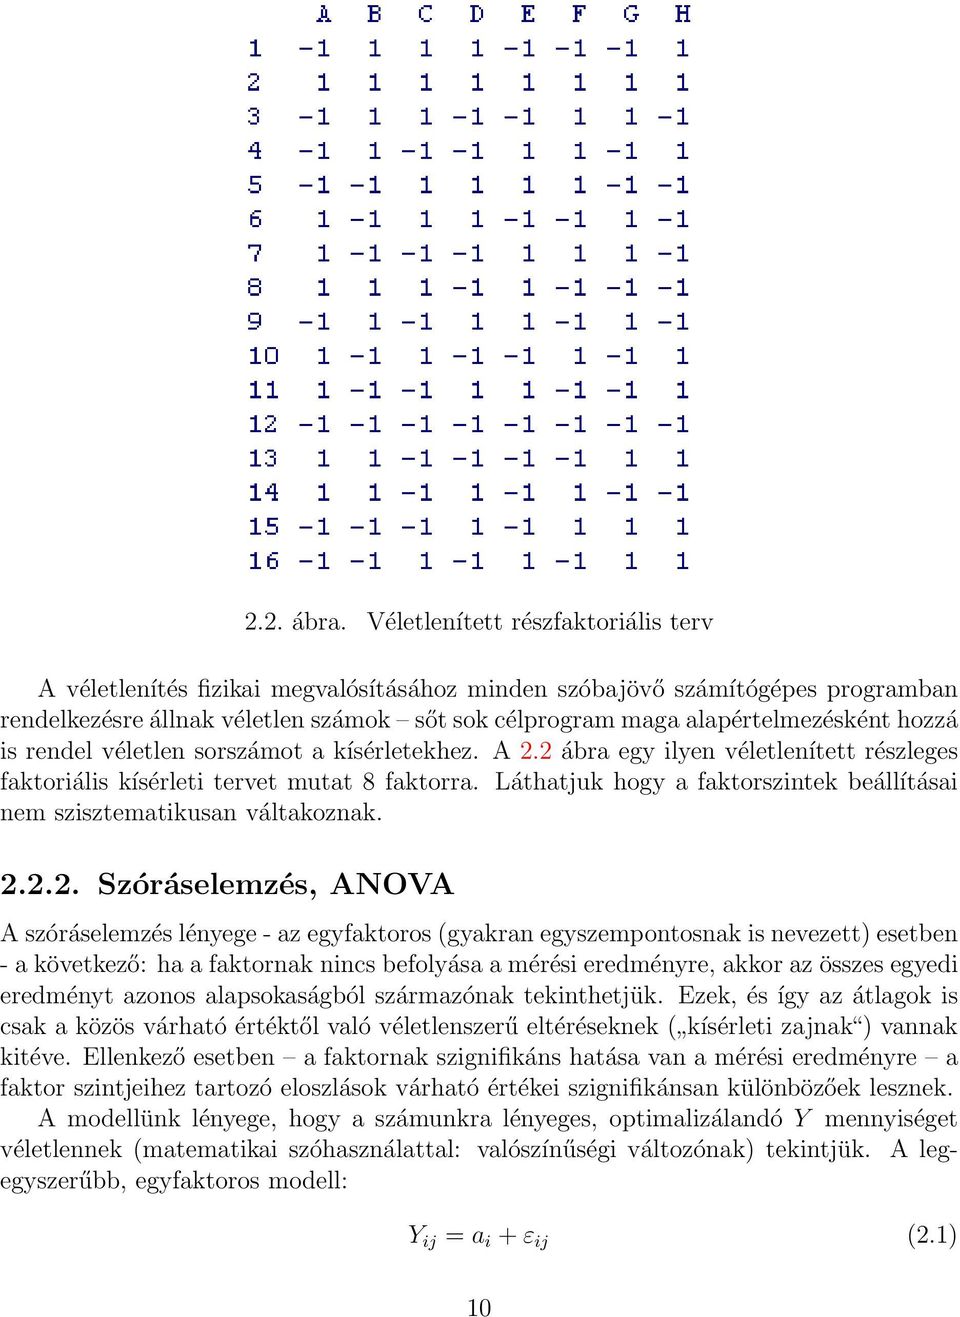 swss uard bináris opciós programok áttekintése)